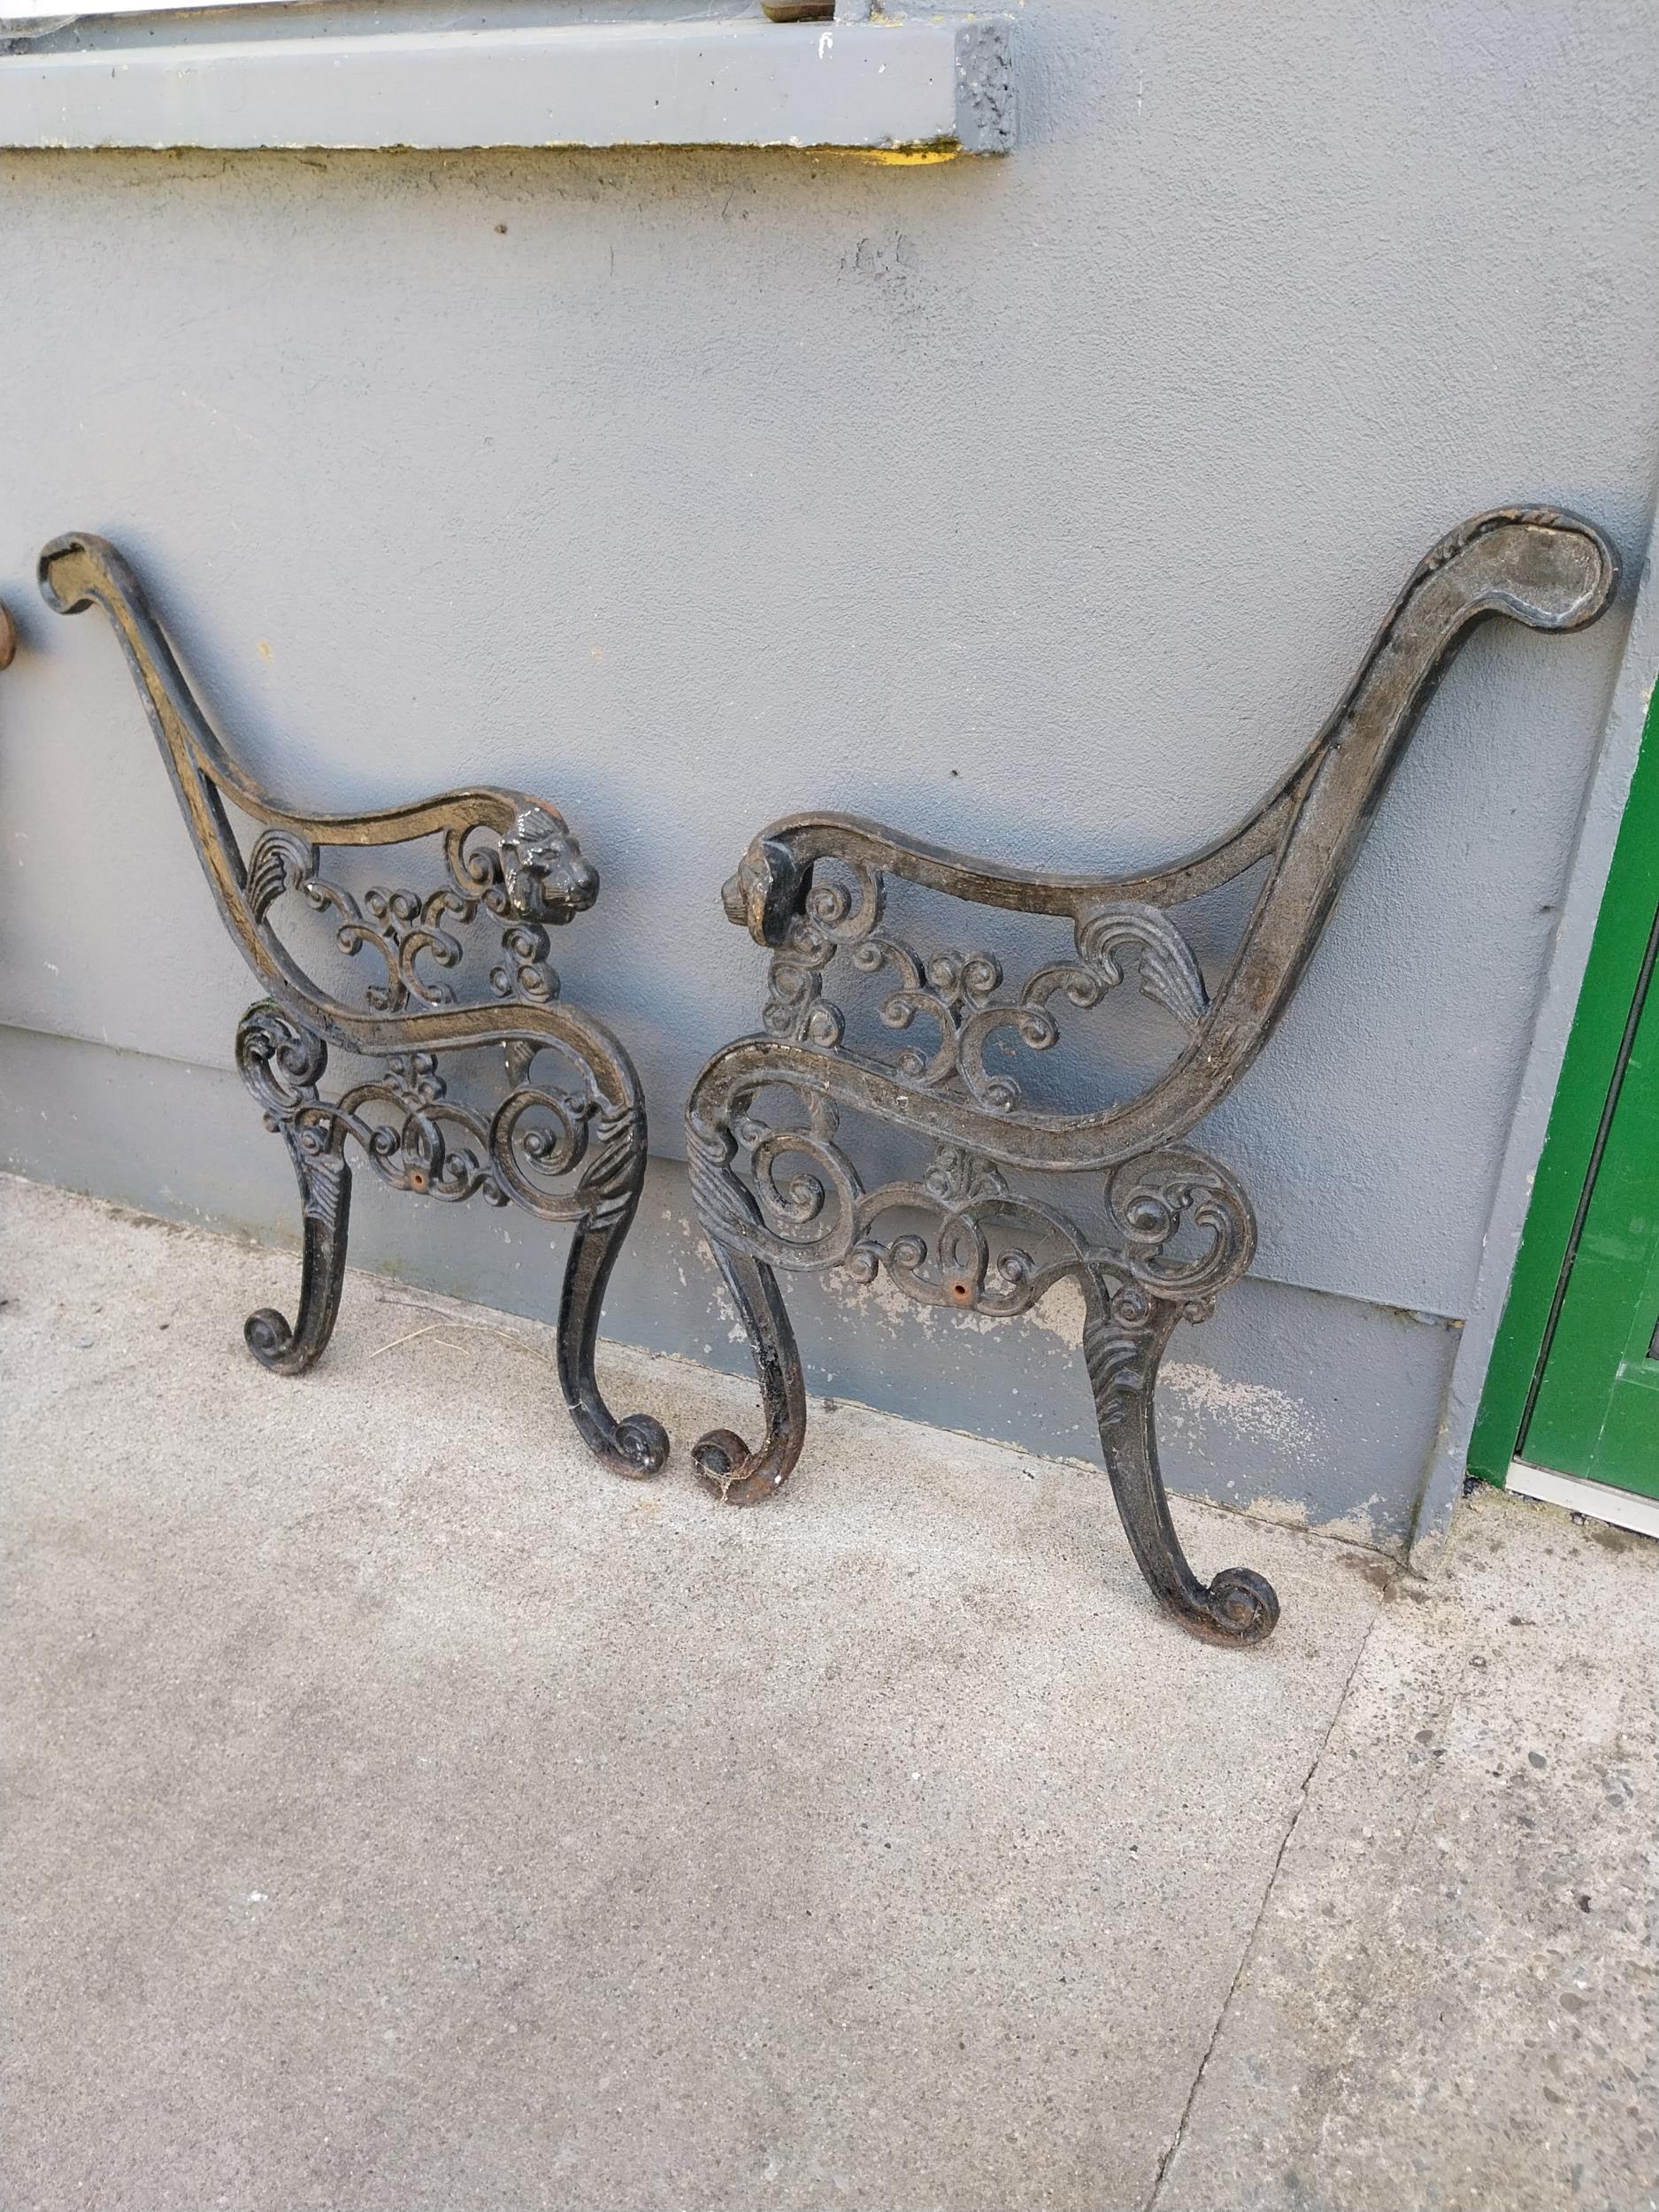 Pair of decorative cast iron seat ends {74 cm H x 66 cm W}.